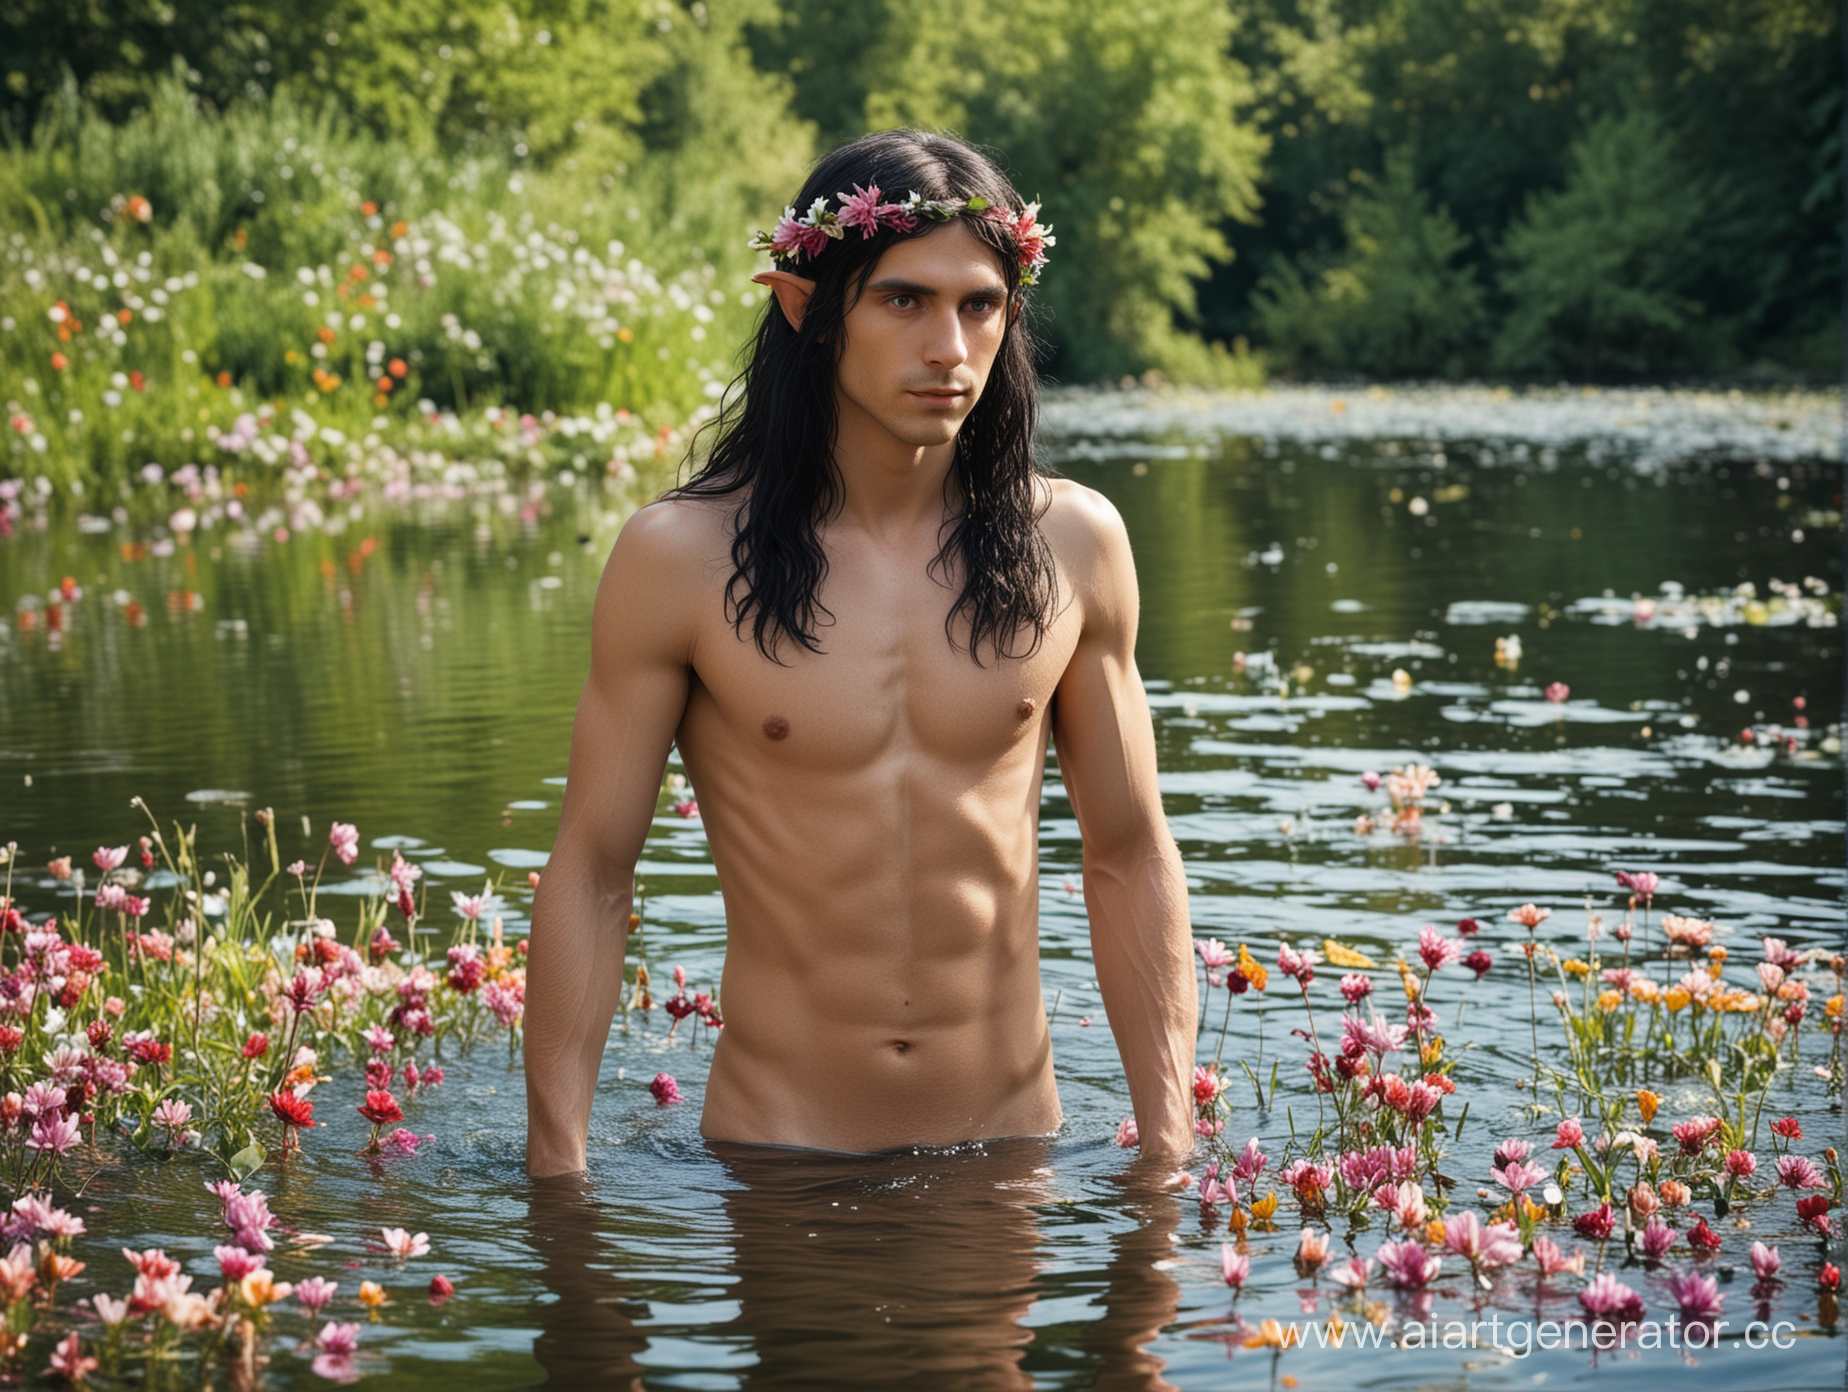 Эльф молодой мужчина раздетый в озере среди цветов, длинные черные волосы